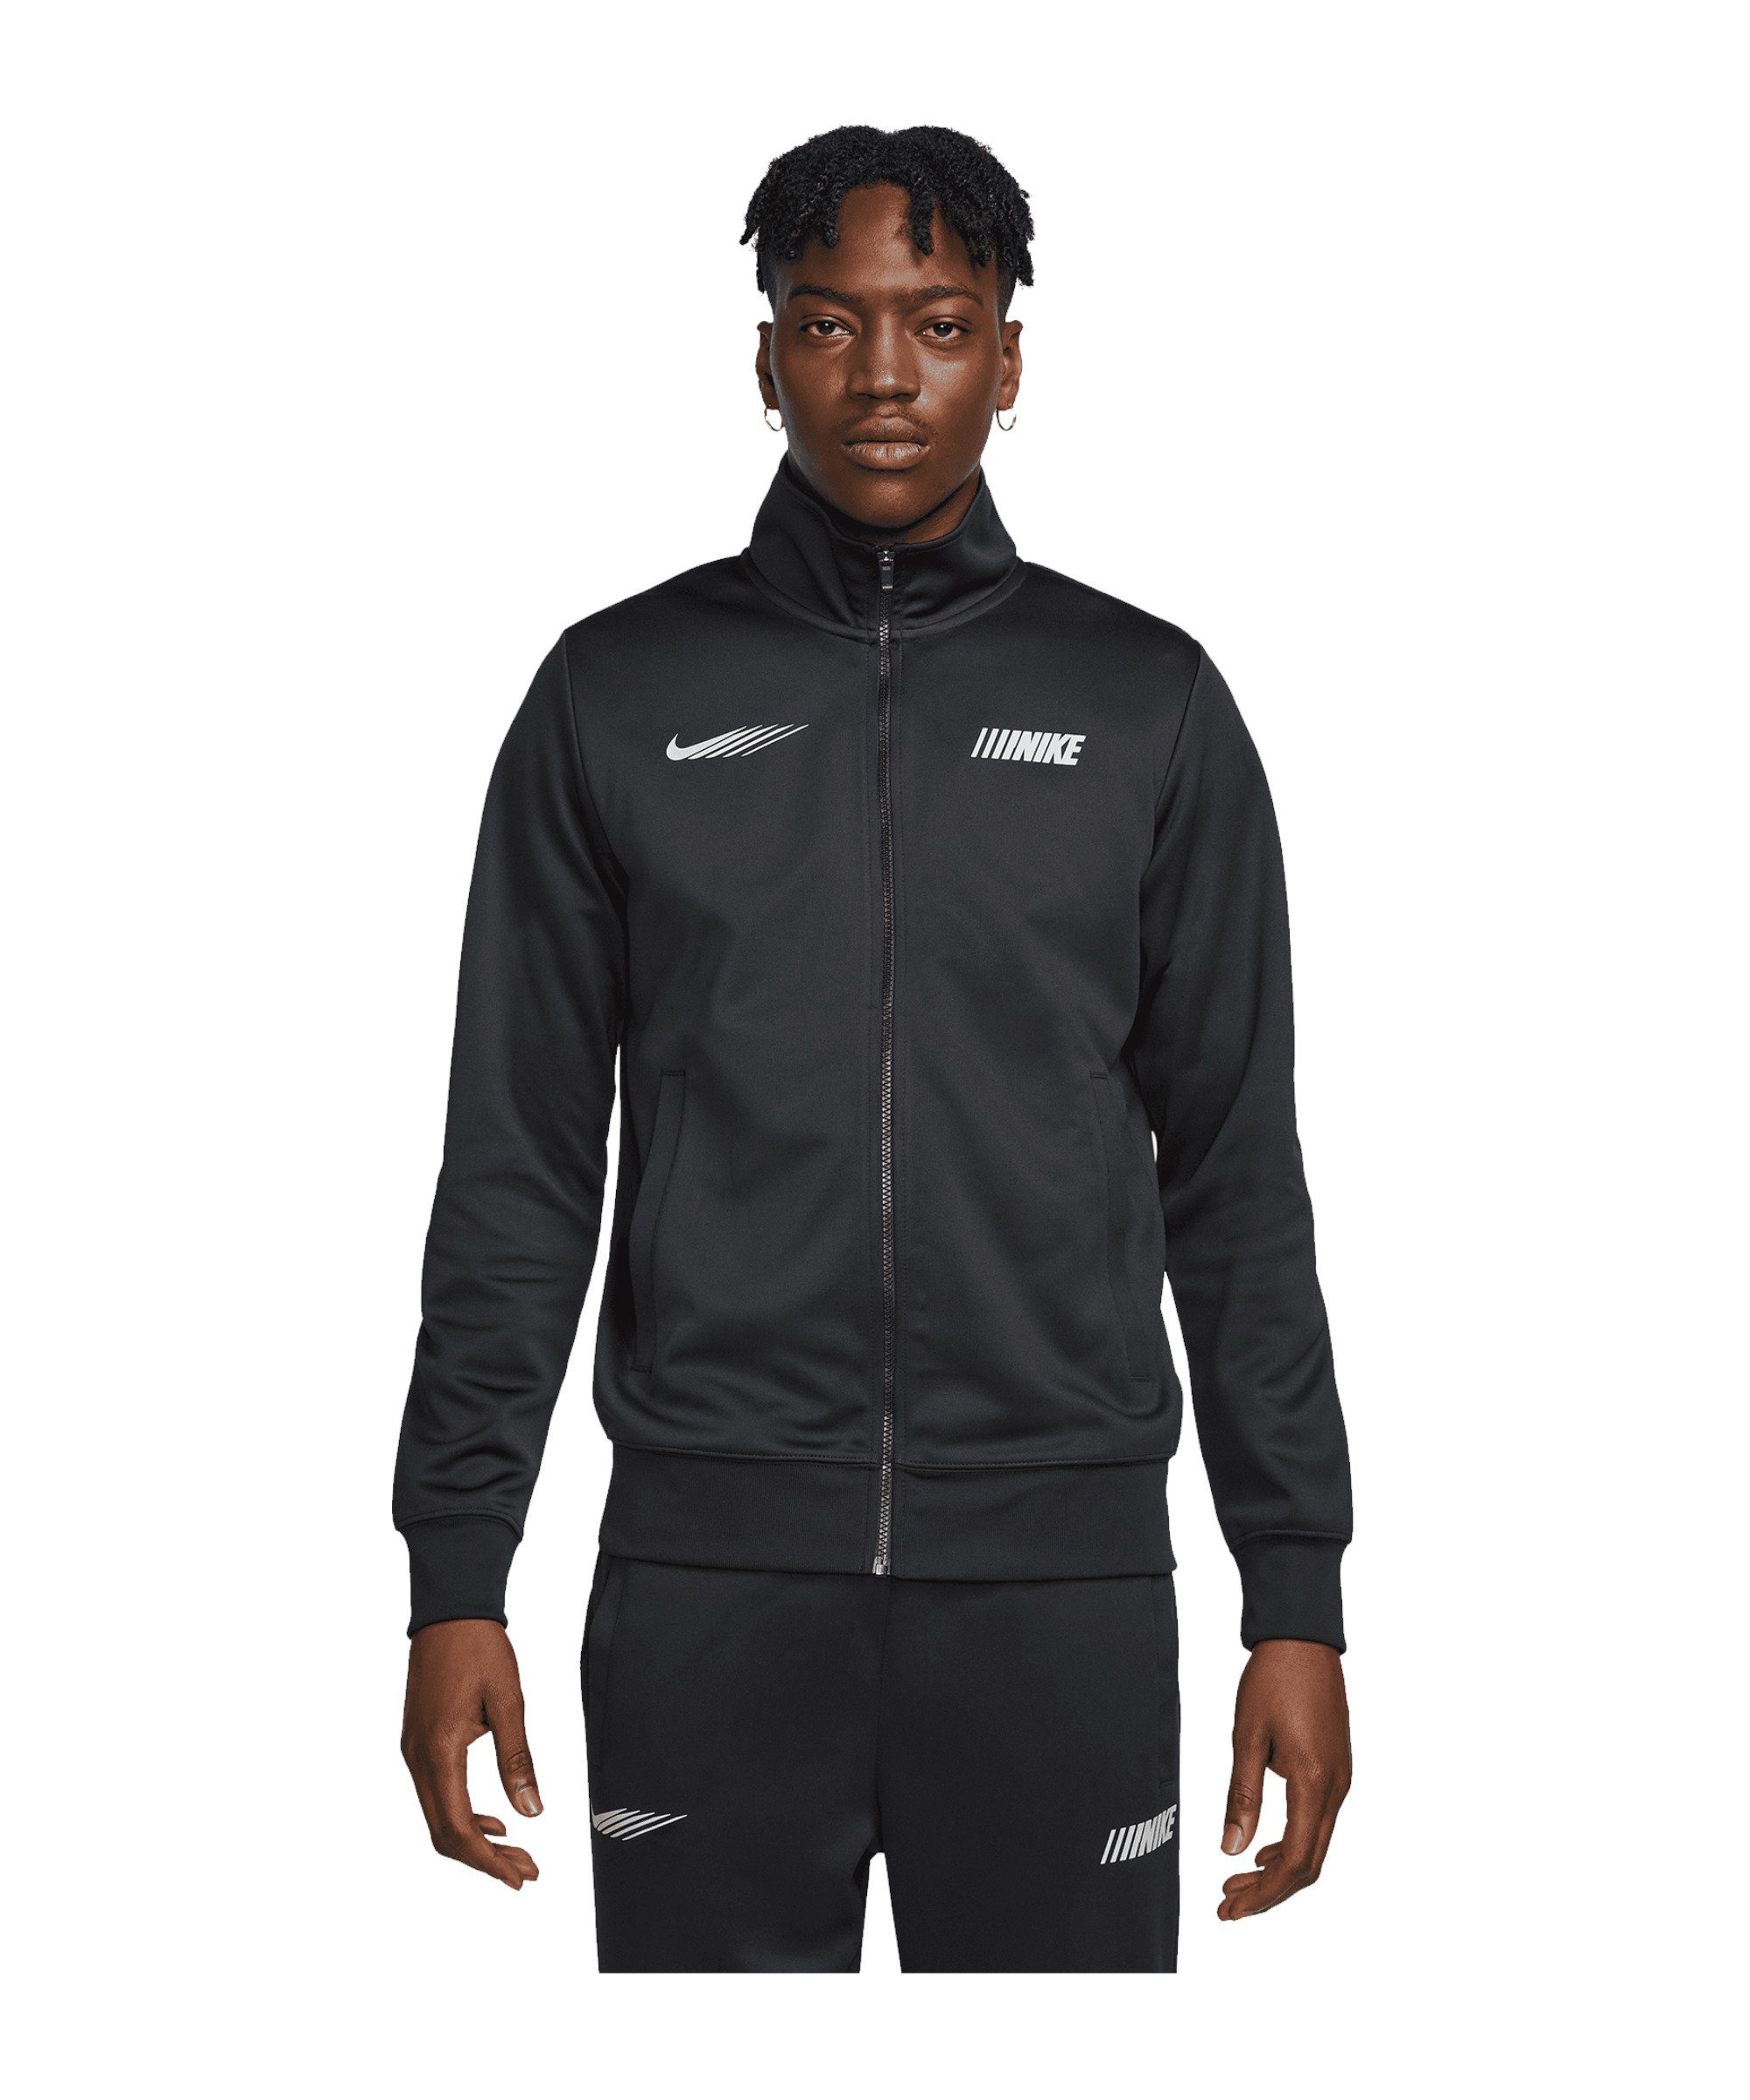 Nike Sportswear Sweatjacke Standart Issue Jacke schwarz